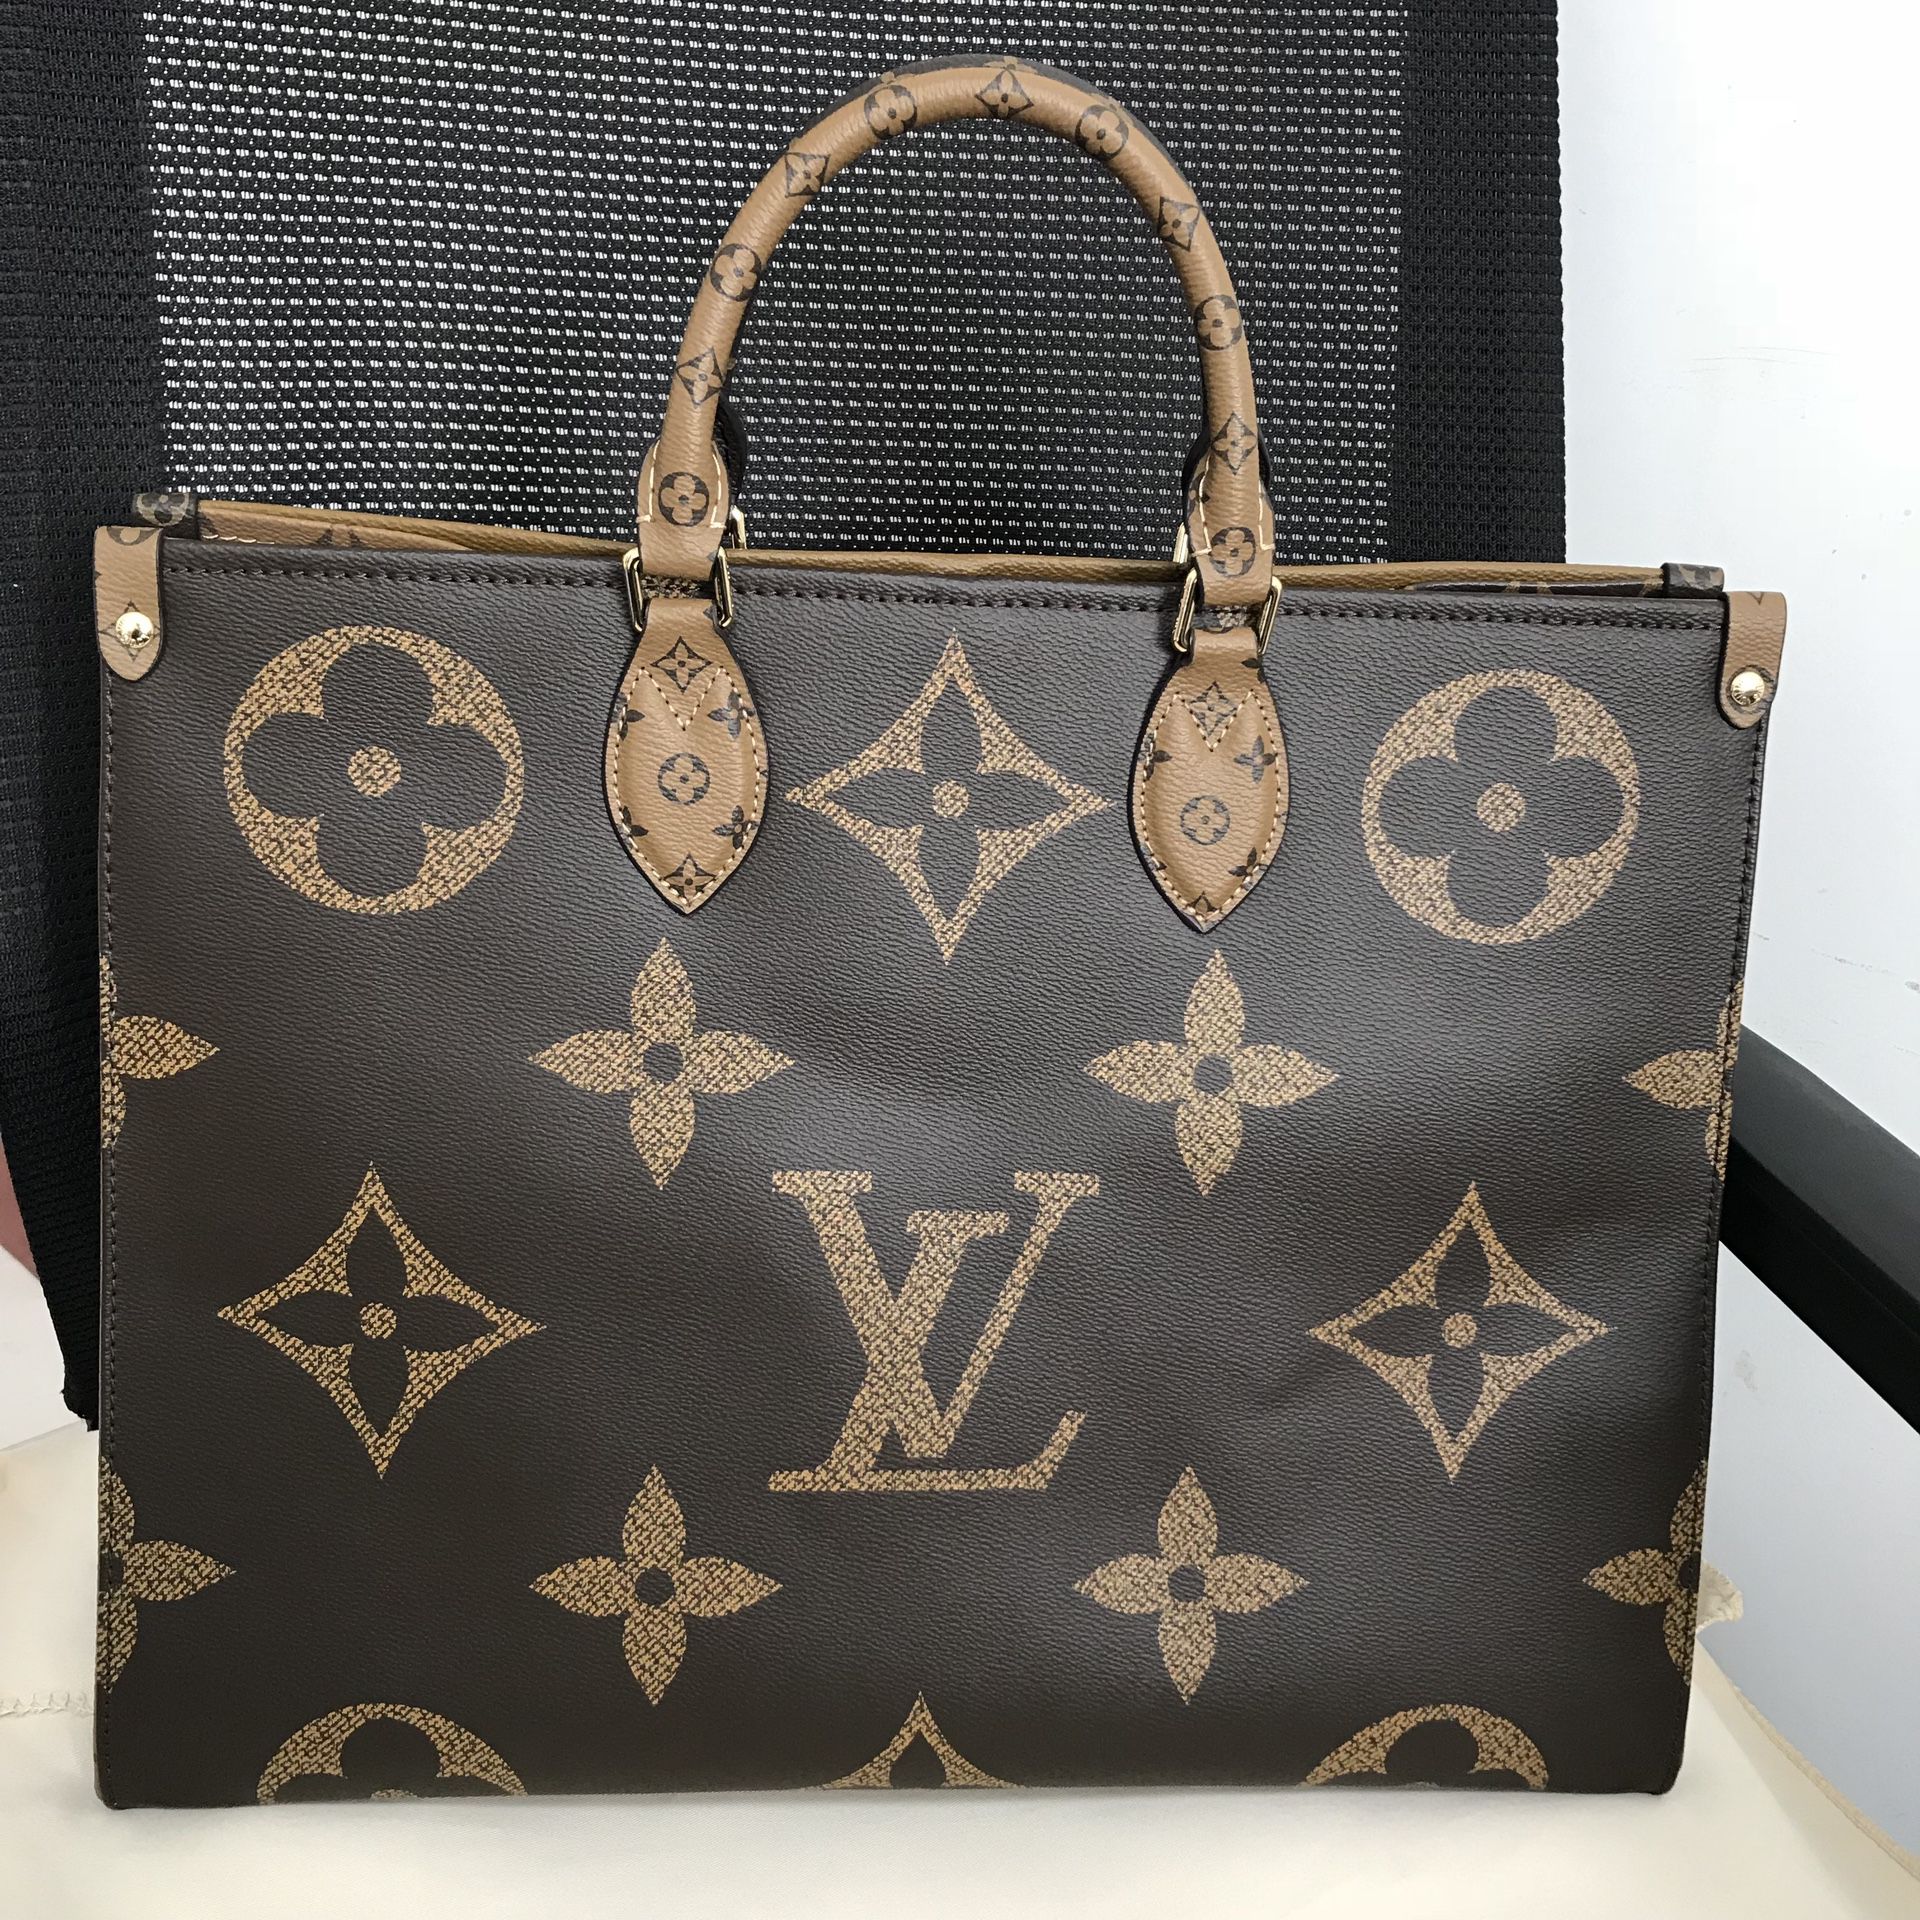 Louis Vuitton Monogram Coated Canvas Double Top Handle Bag on SALE